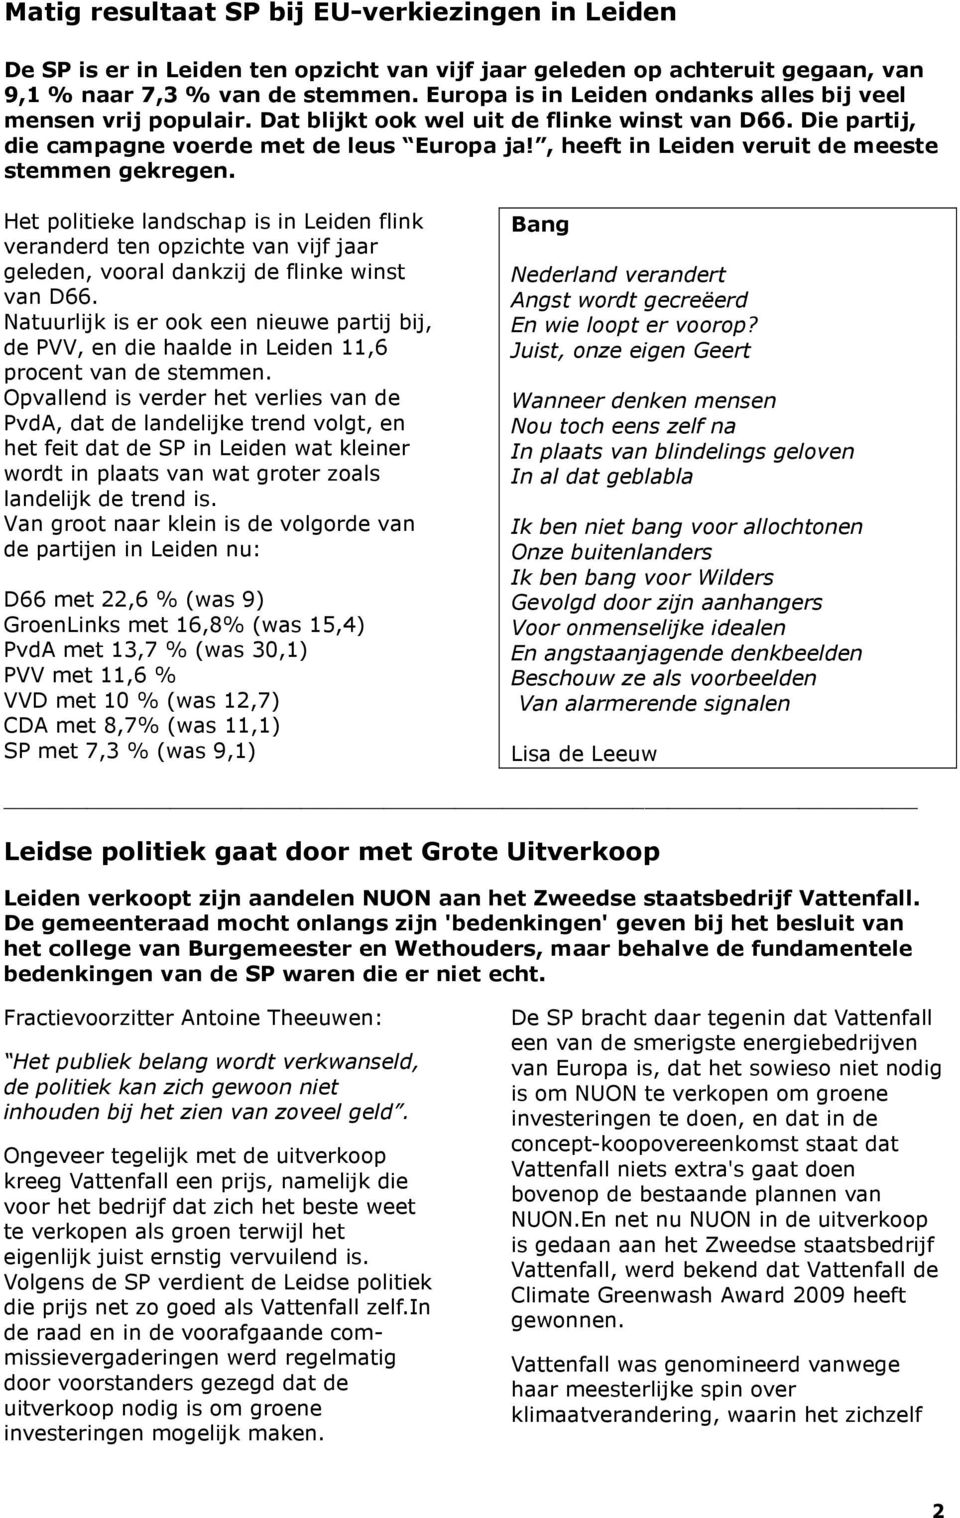 , heeft in Leiden veruit de meeste stemmen gekregen. Het politieke landschap is in Leiden flink veranderd ten opzichte van vijf jaar geleden, vooral dankzij de flinke winst van D66.